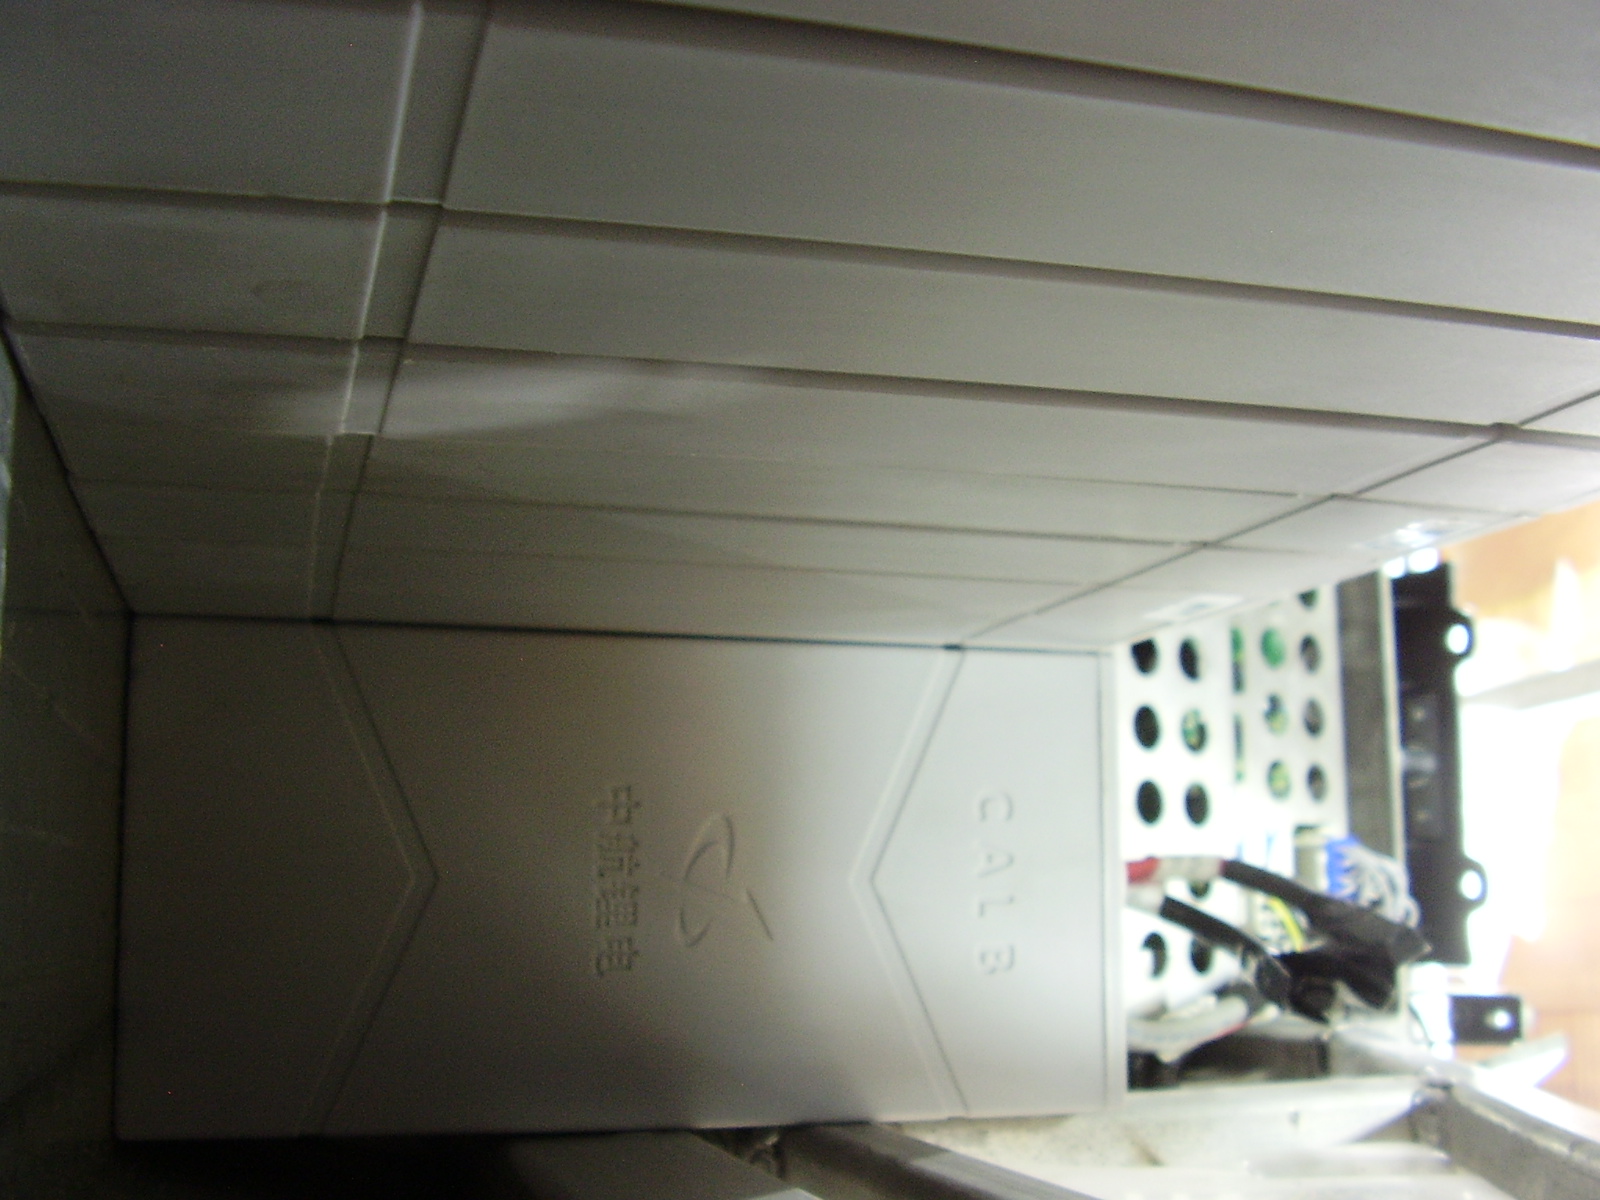 Uma perspectiva do interior da caixa das baterias, com já algumas lá colocadas para ensaio.